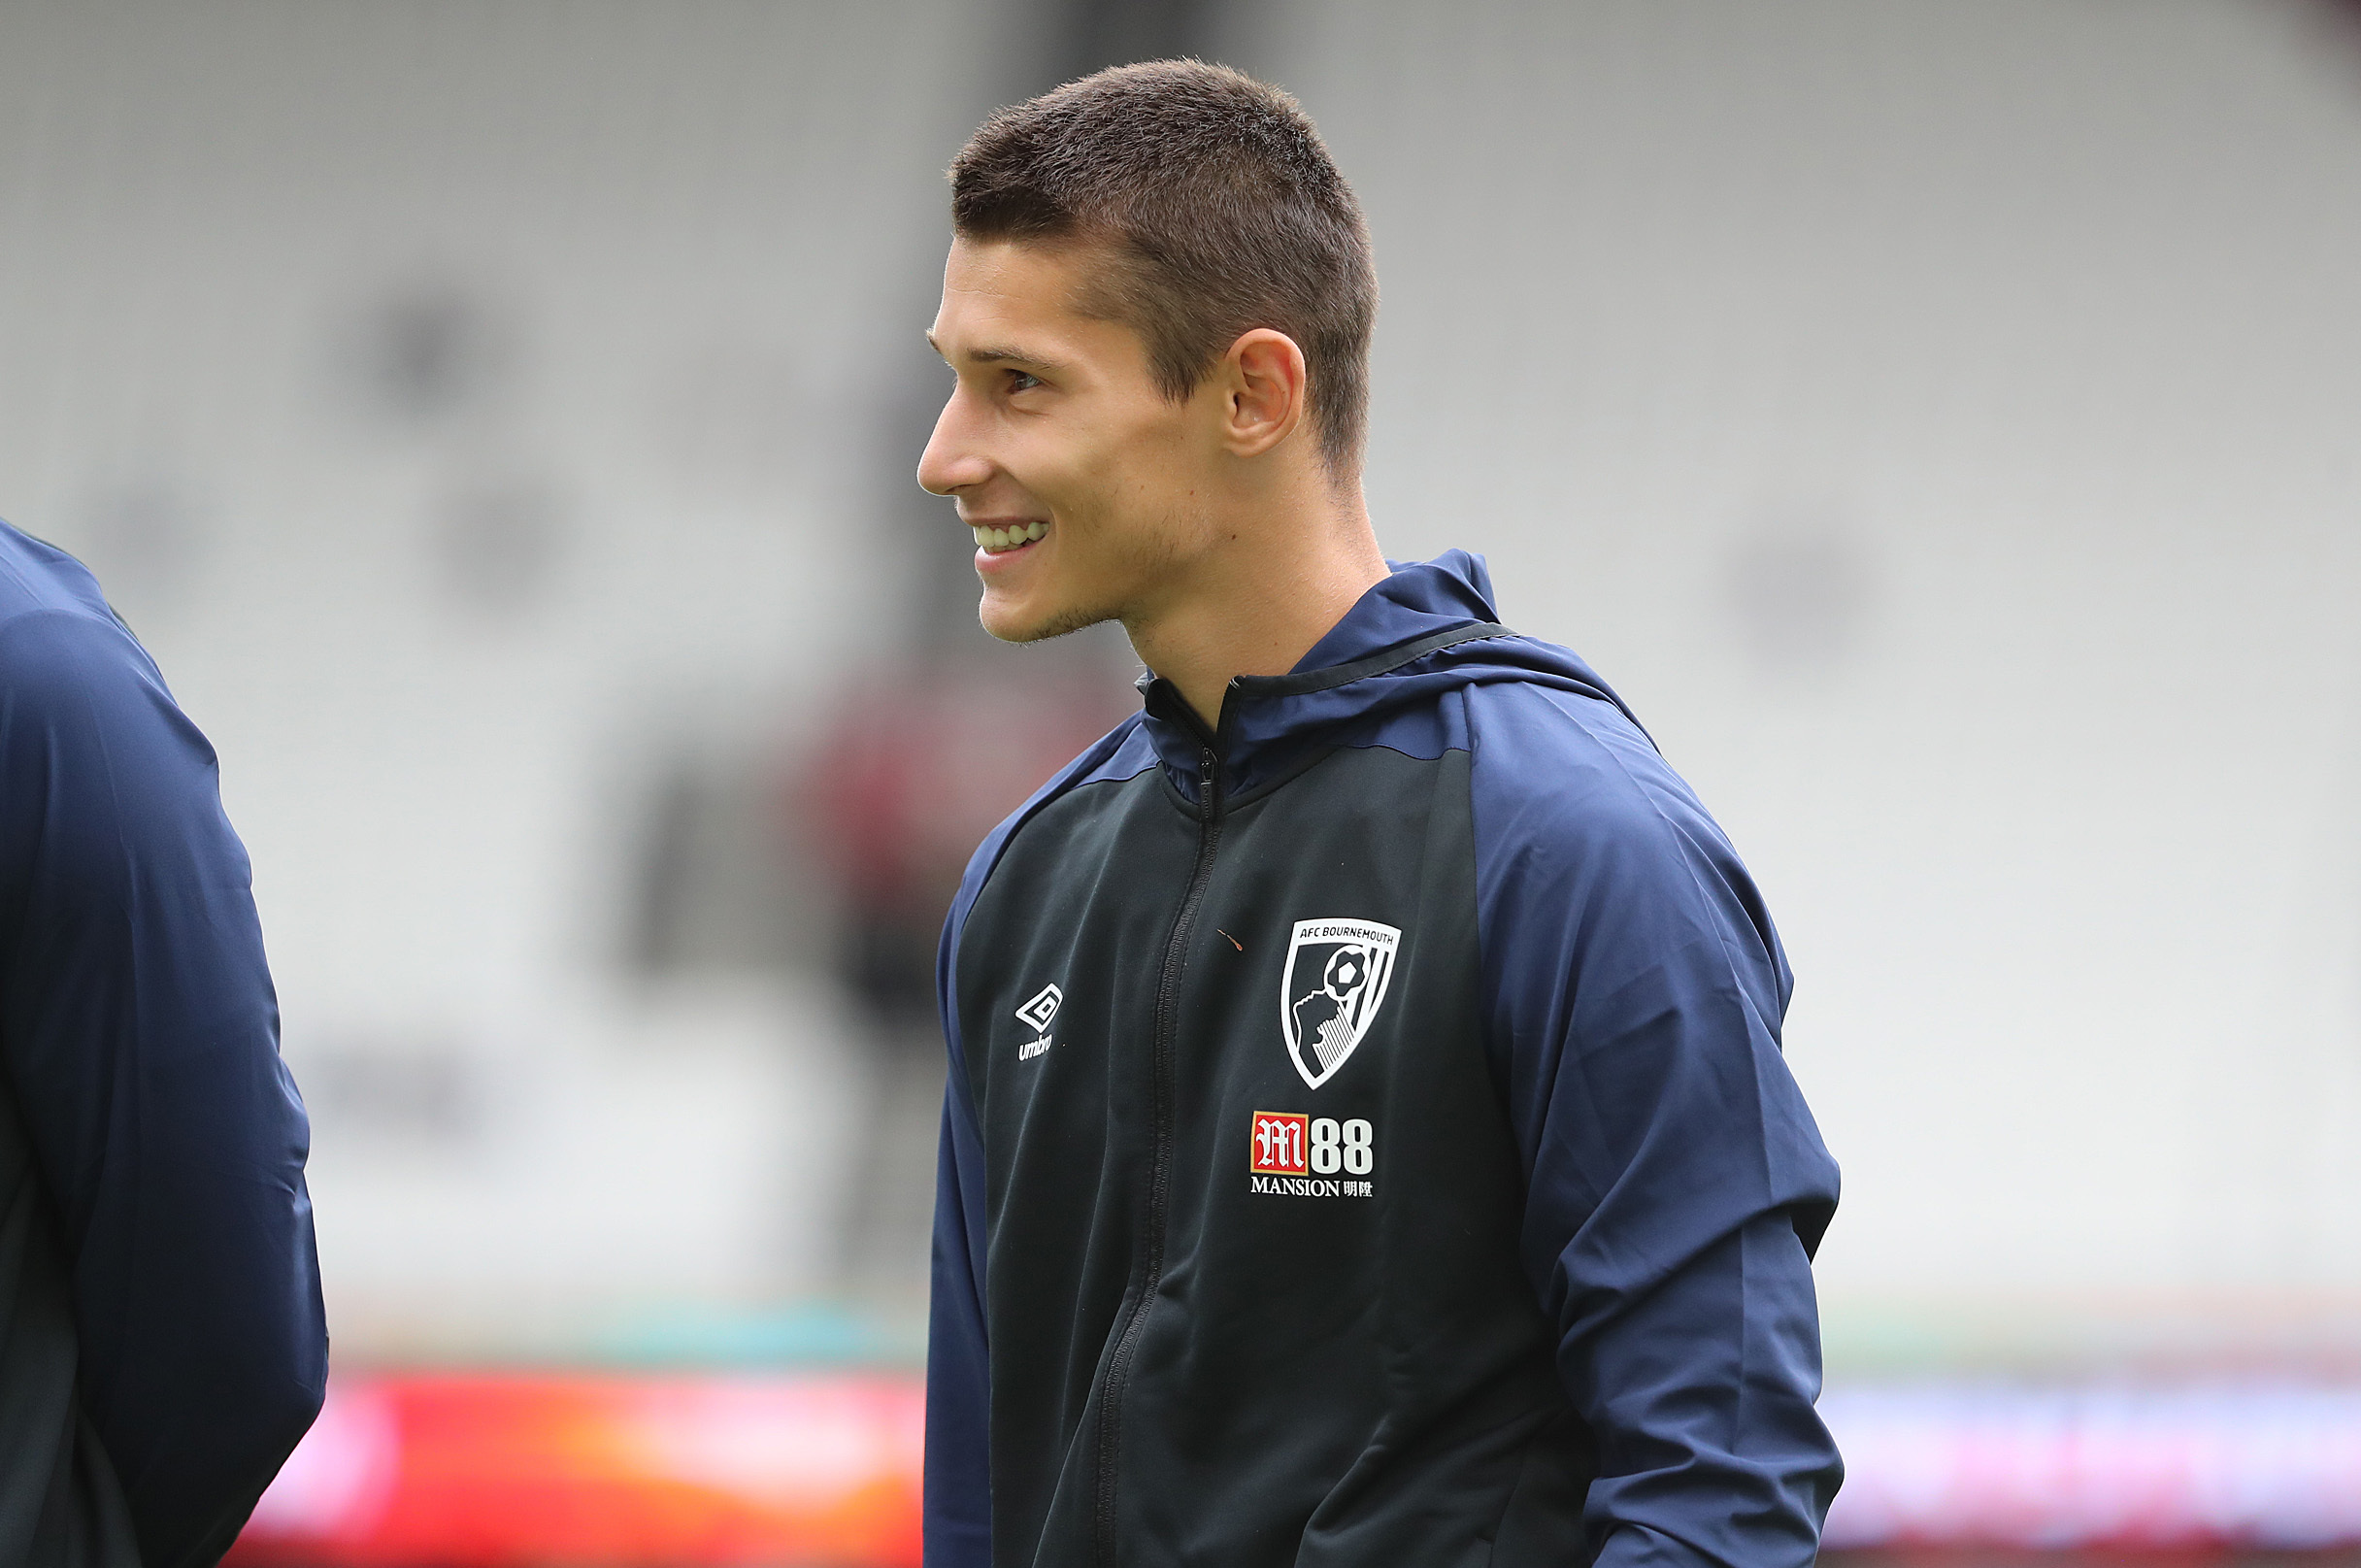 OFICIAL | Alex Dobre a semnat cu Dijon și va juca în Ligue 1: Ziua aceasta va rămâne în istorie